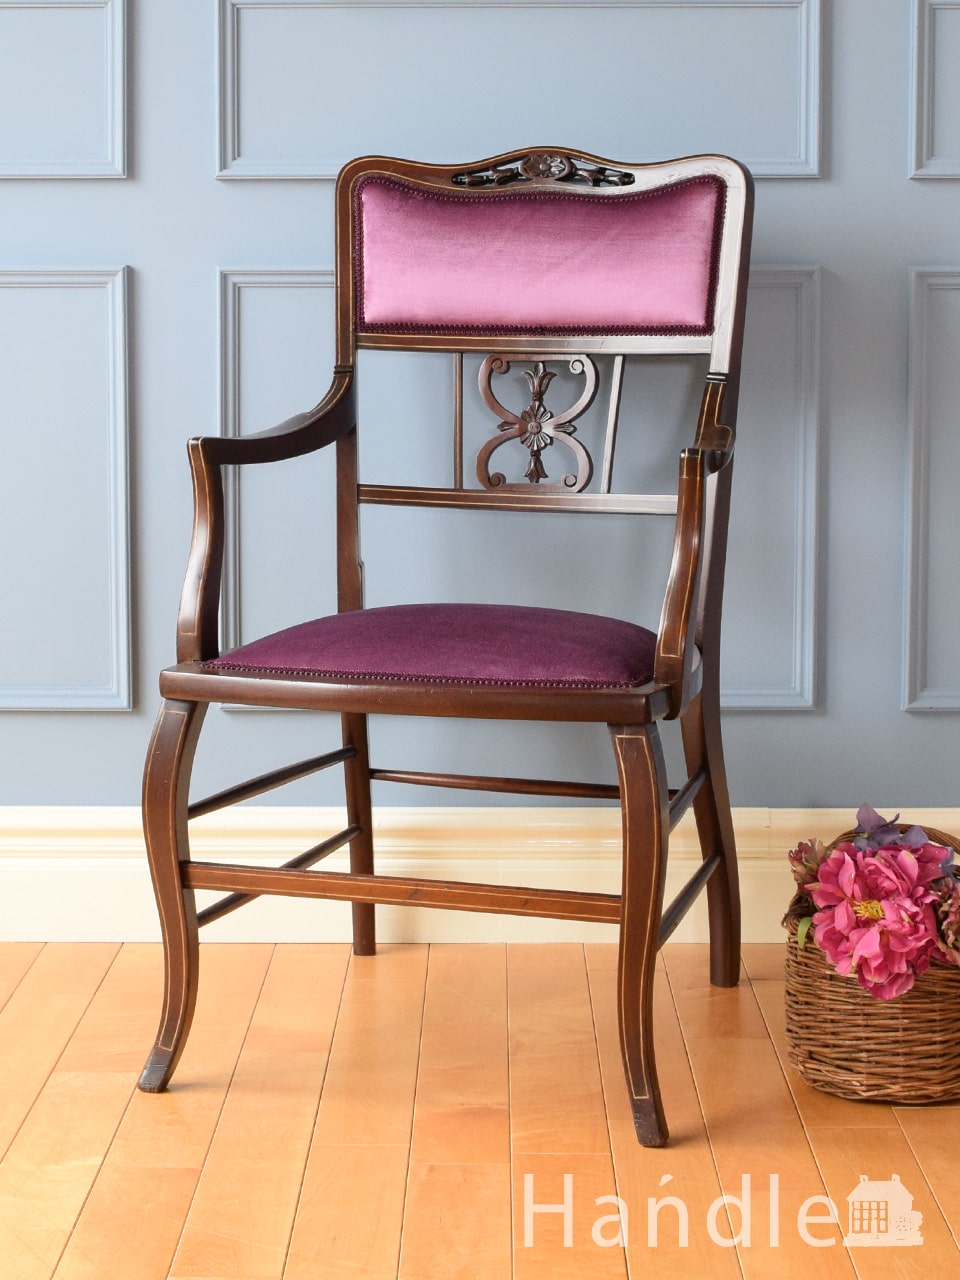 イギリスで見つけた美しいアーム付き椅子、透かし彫りの入ったアンティークサロンチェア (q-519-c)